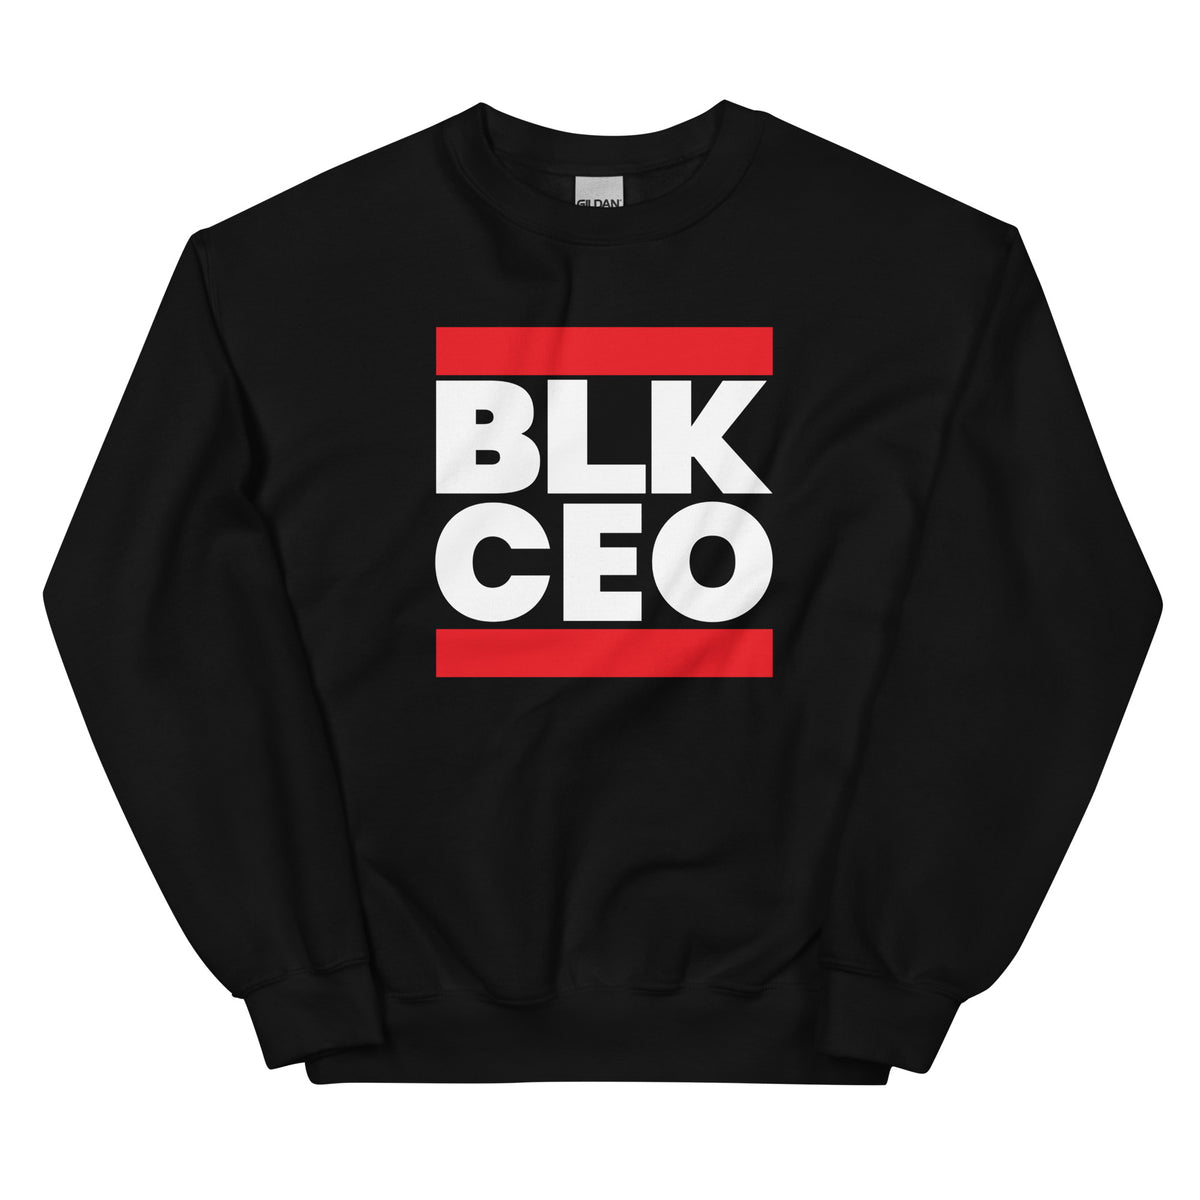 BLK CEO Sweatshirt